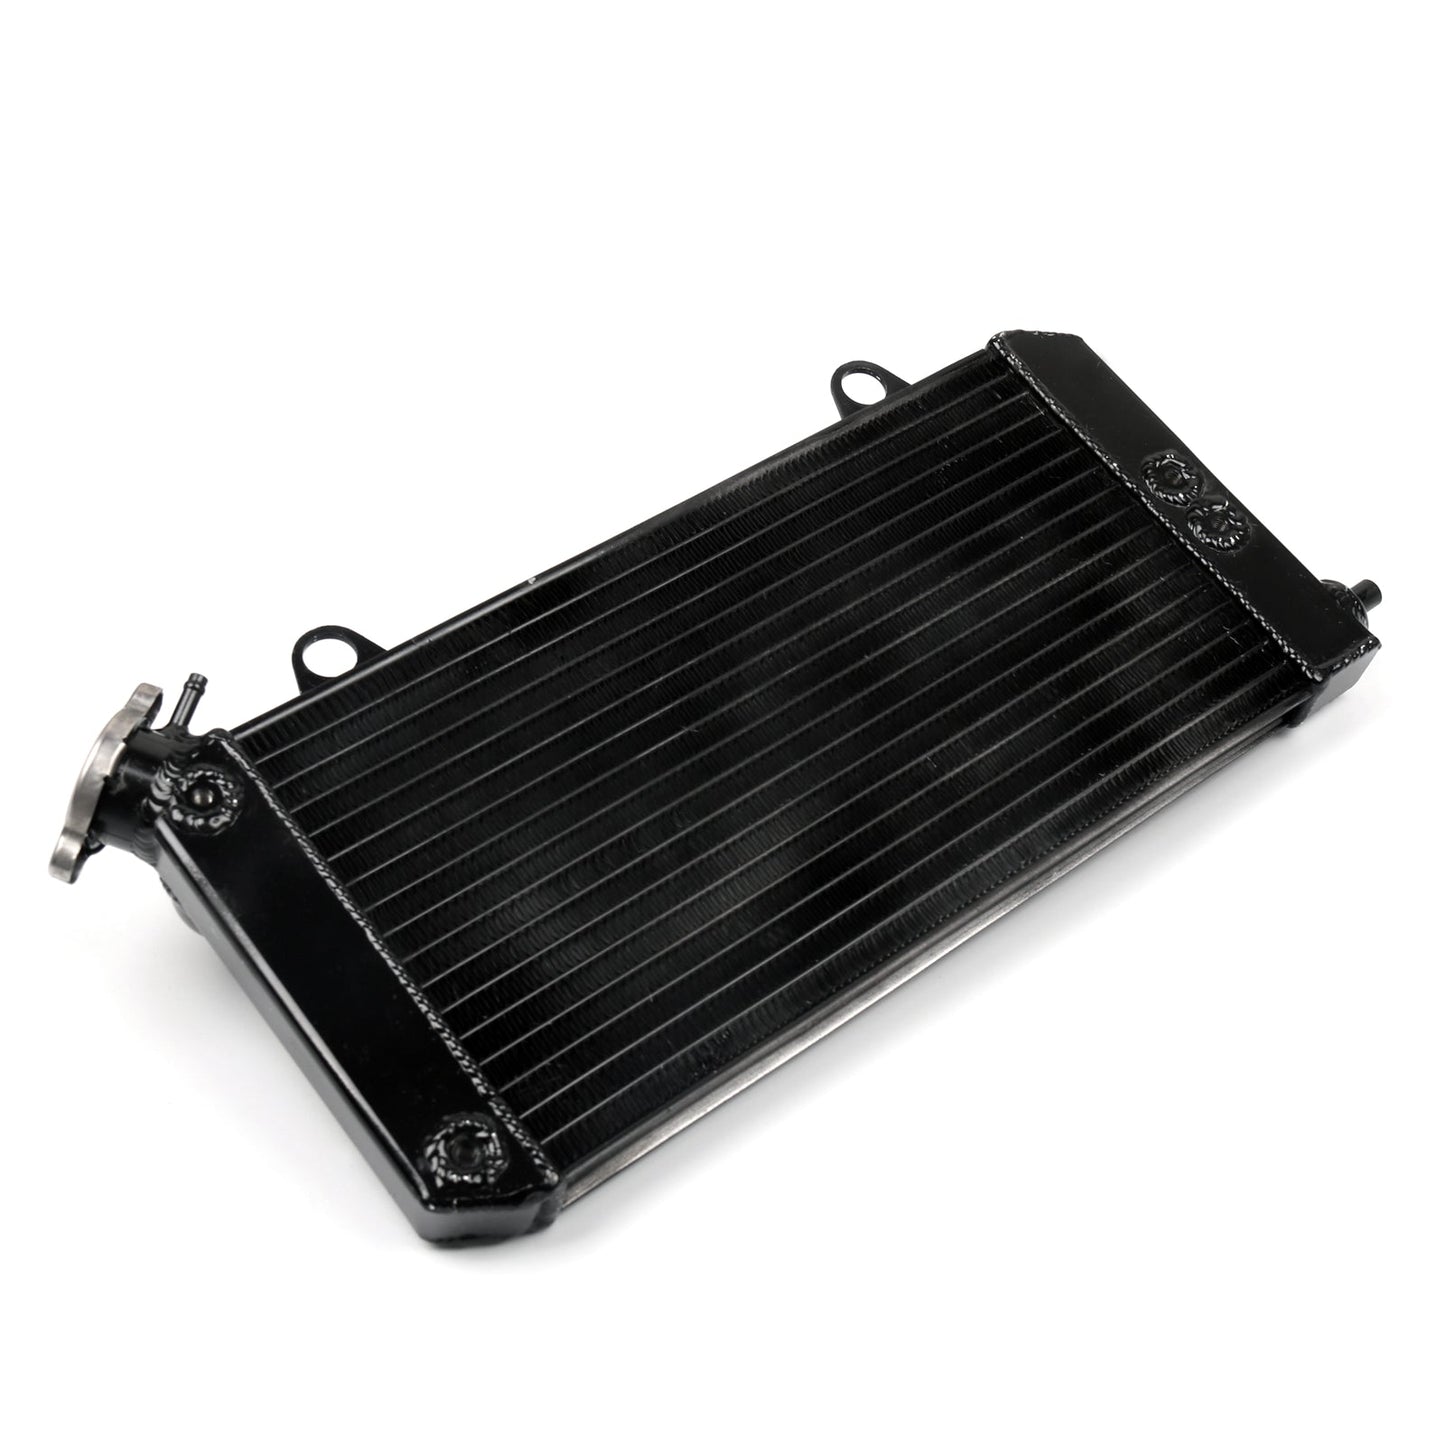 Raffreddamento protezione griglia radiatore per Yamaha XTZ1200 Super Tenere 2010-2015 Generico